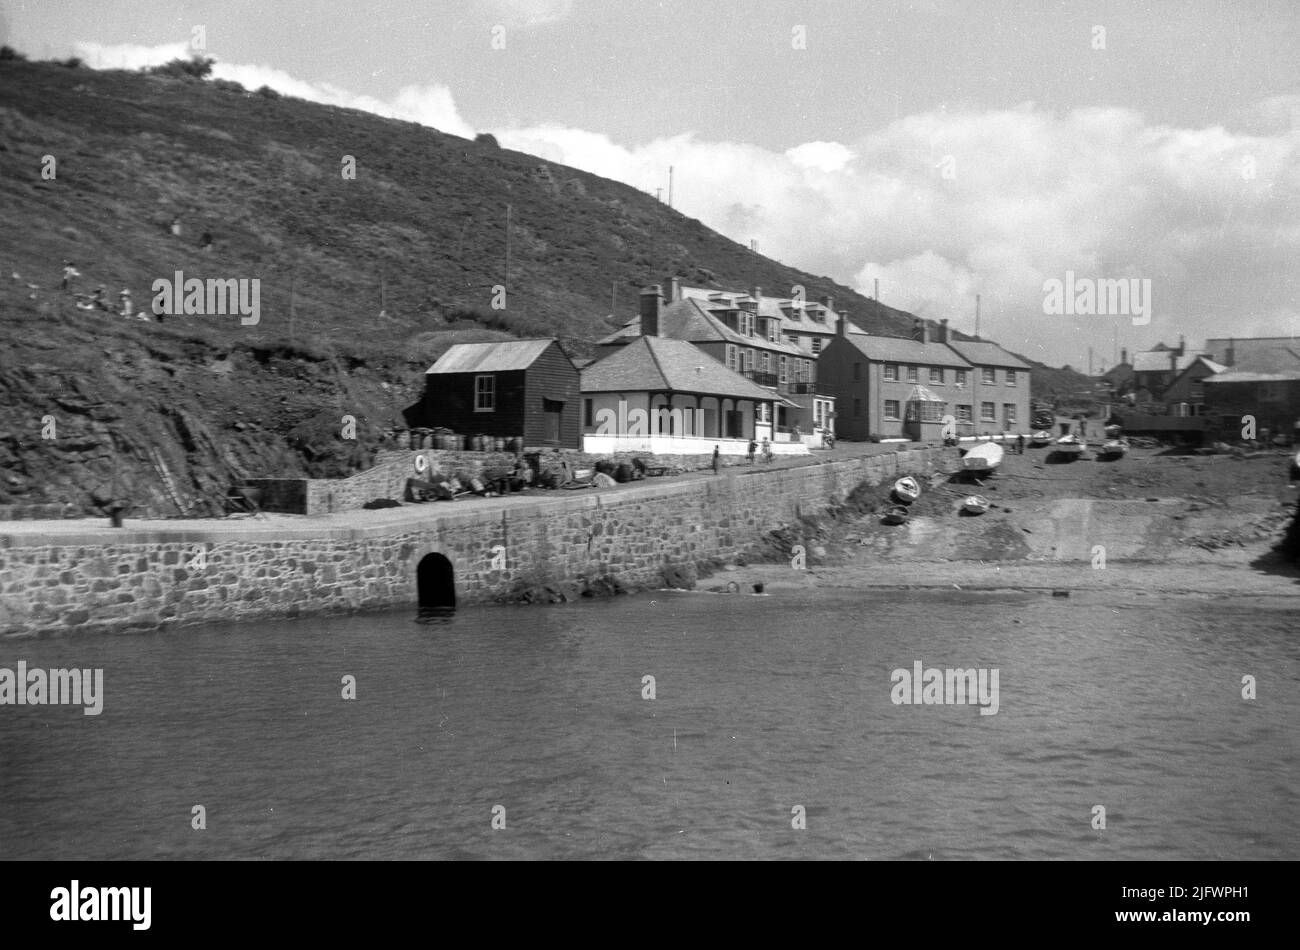 1939, historisch, Küstenbucht und Hafen in Mullion, Cornwall, England, Großbritannien. Das Dorf liegt an der Lizard Peninusla und ist eines der malerischsten in West Cornwall. Seine Bucht, die im Jahr 1890s erbaut wurde, ist seit der Aufnahme dieses Bildes Ende 1930s nahezu unverändert geblieben. Stockfoto